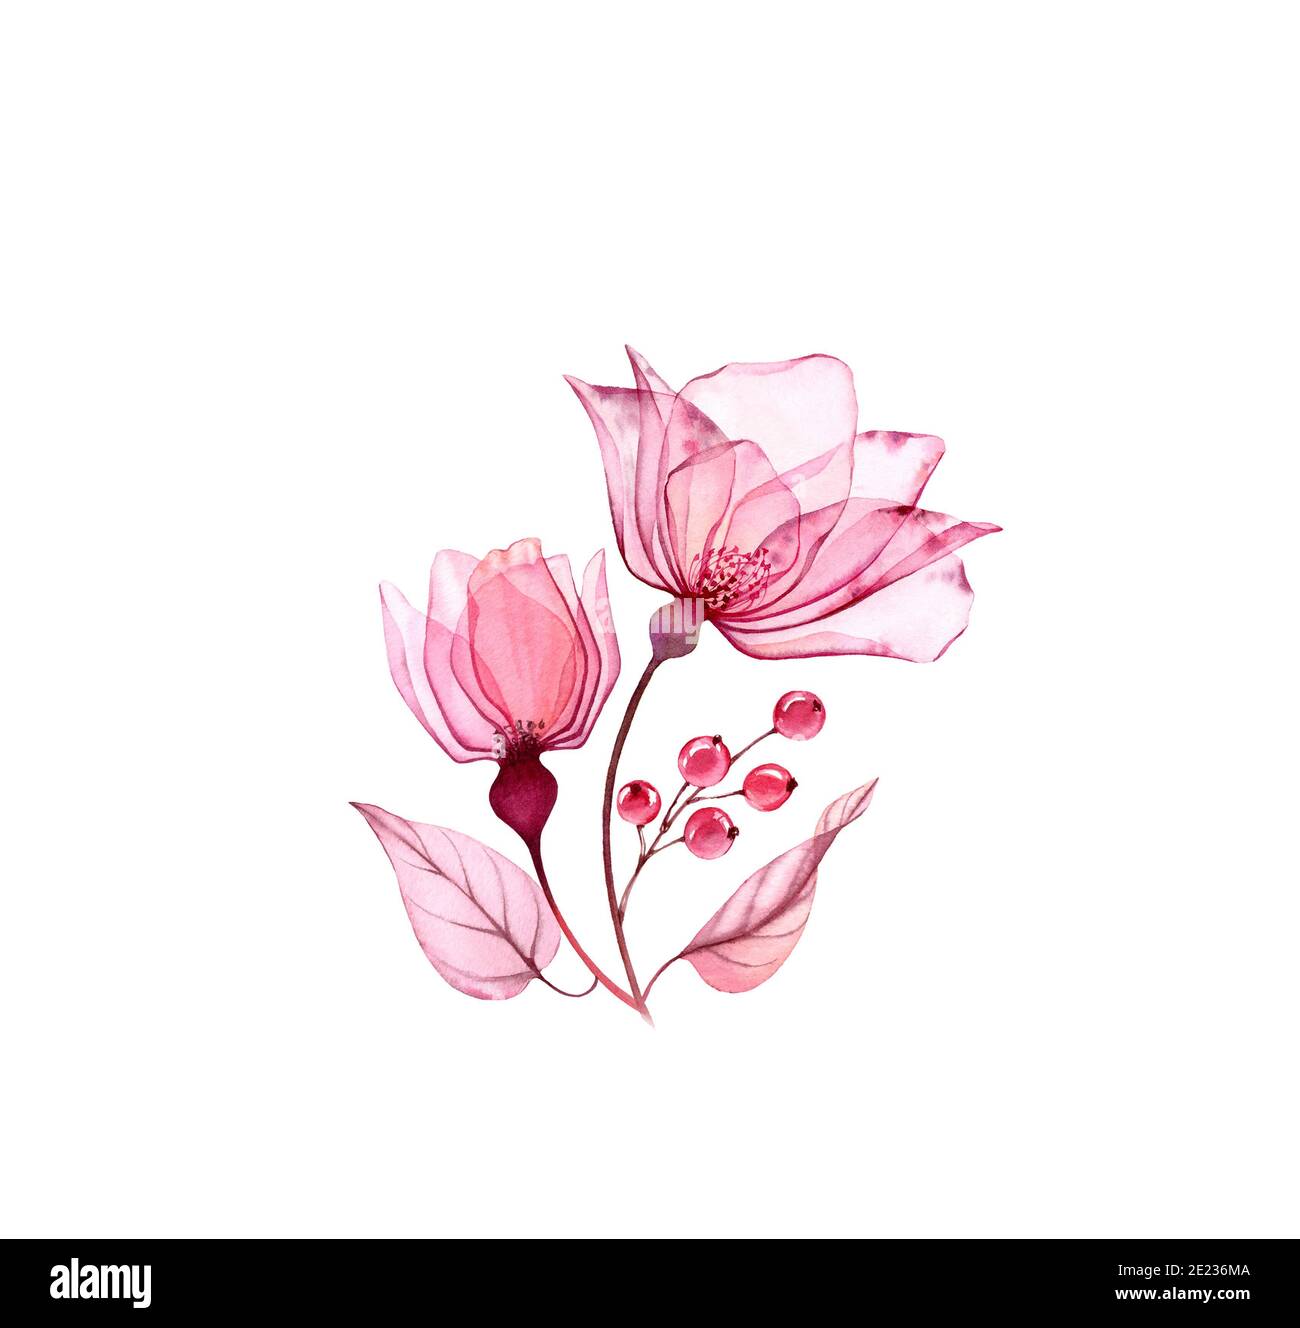 Aquarell Rosenstrauß. Zwei rosa Blüten mit Blättern und Beeren isoliert auf weiß. Handbemaltes Kunstwerk mit detaillierten Blütenblättern. Botanische Abbildung Stockfoto